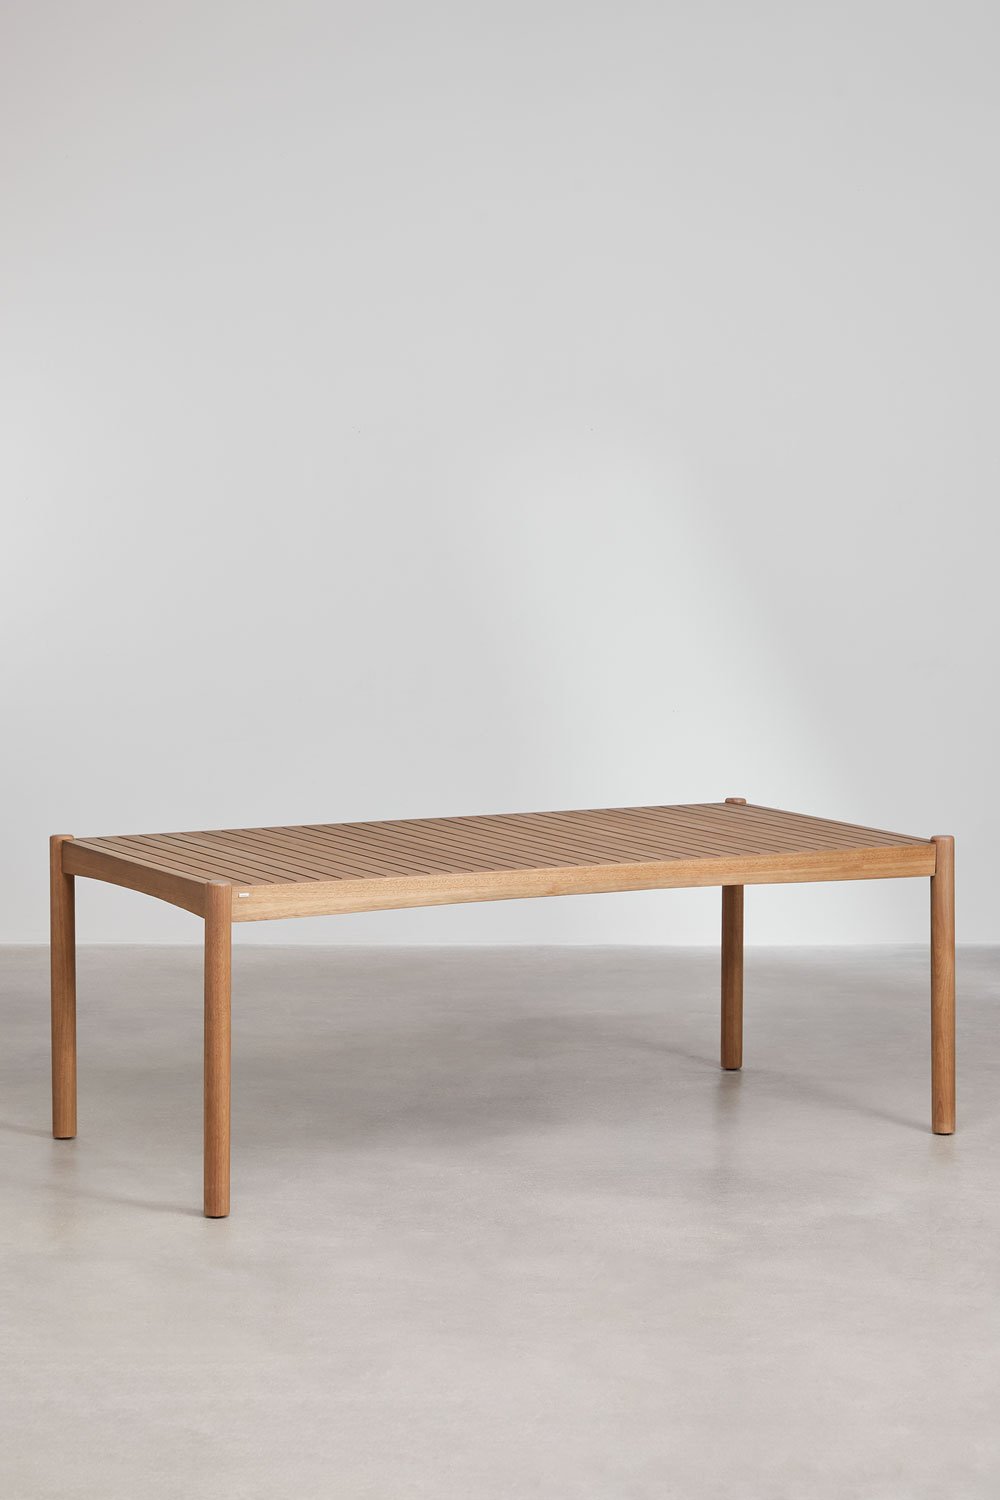 Prostokątny stół ogrodowy z drewna eukaliptusowego (200x100 cm) Aderyn, obrazek w galerii 1